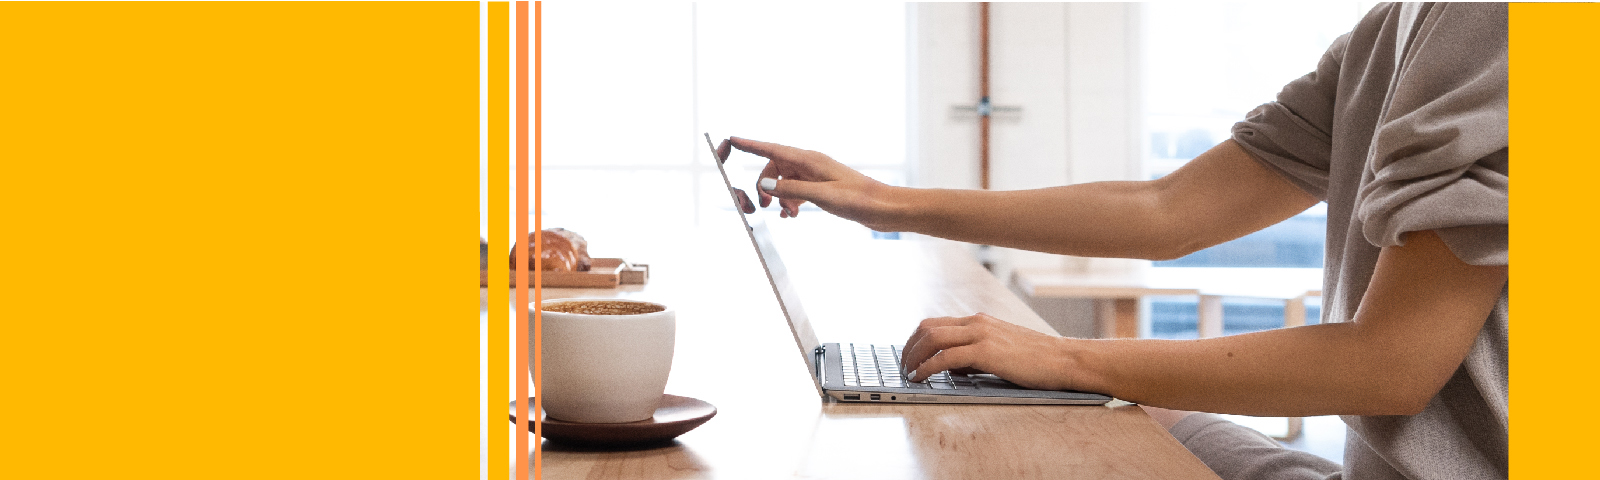 vrouw op surface laptop en een kop koffie